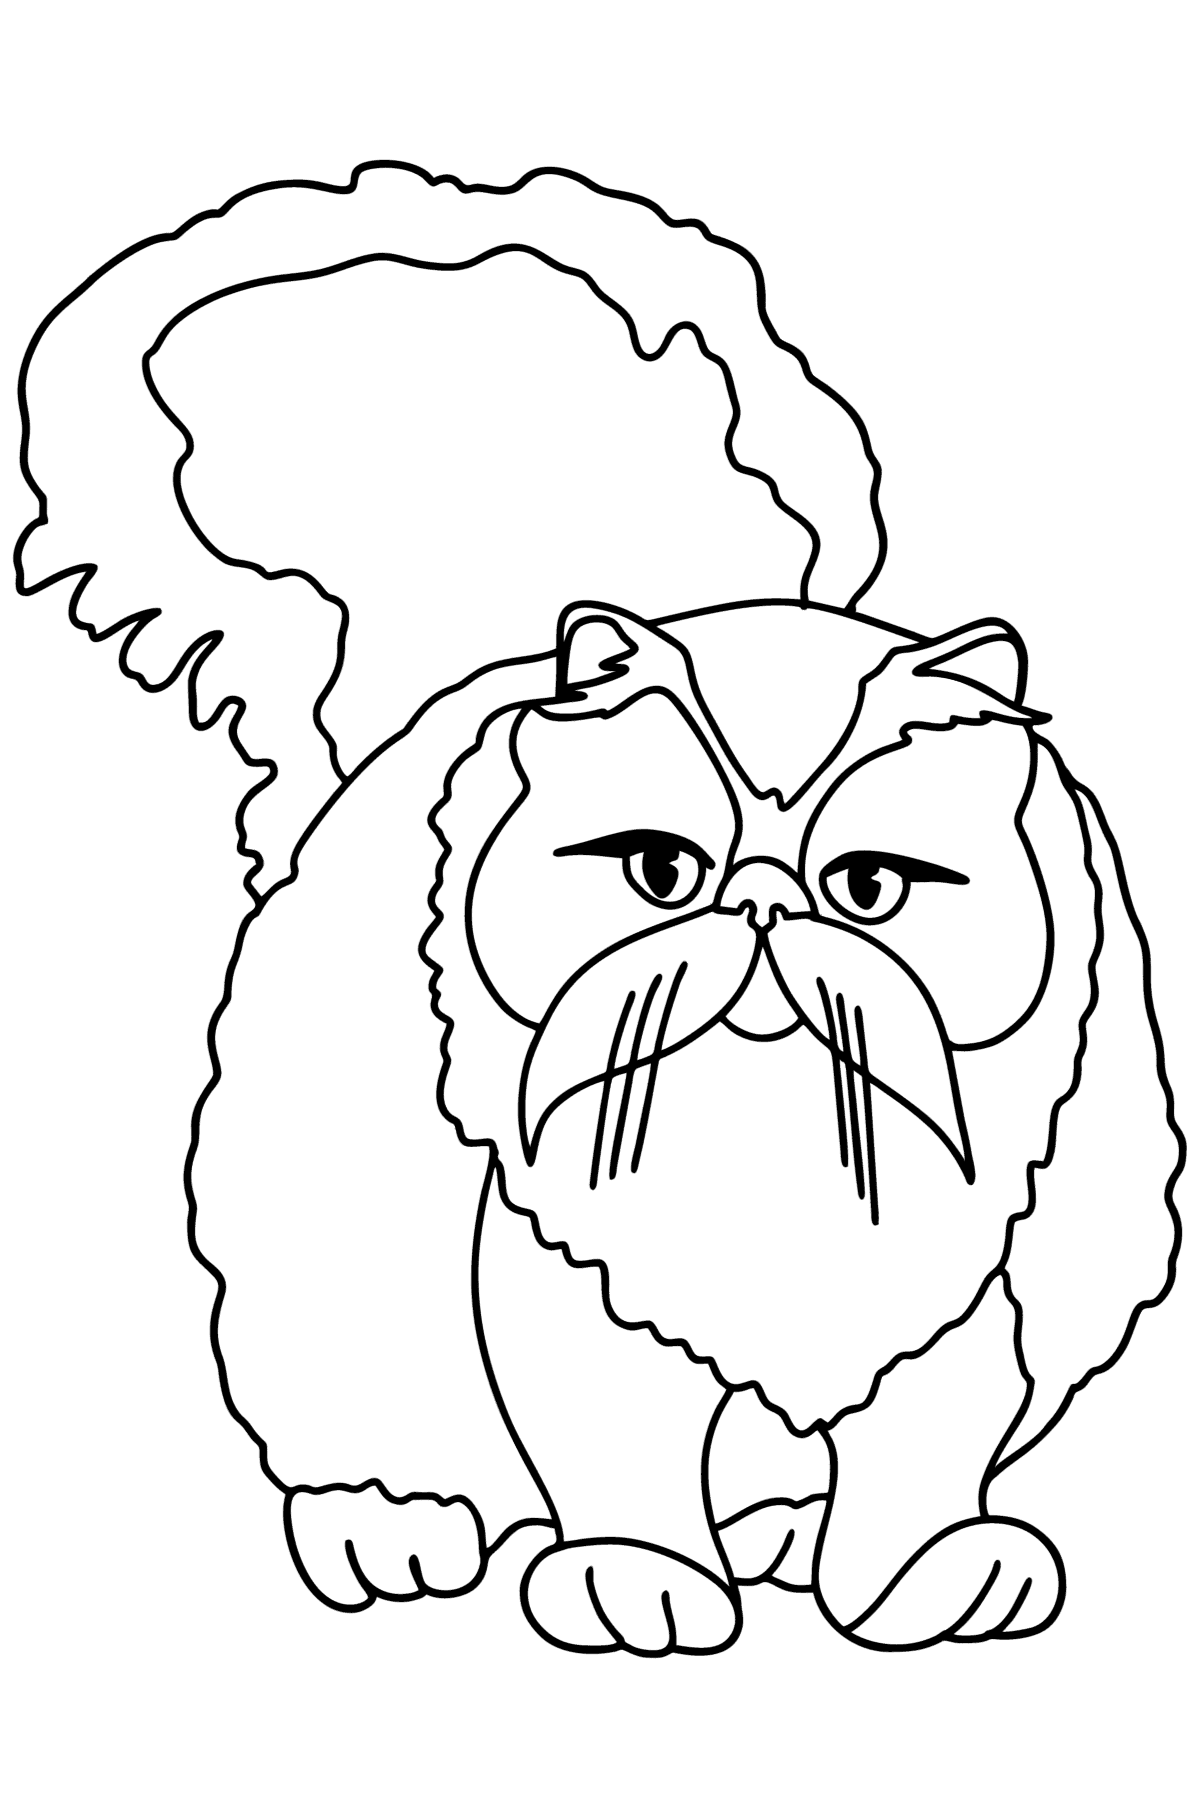 Раскраска Персидская кошка - Картинки для Детей